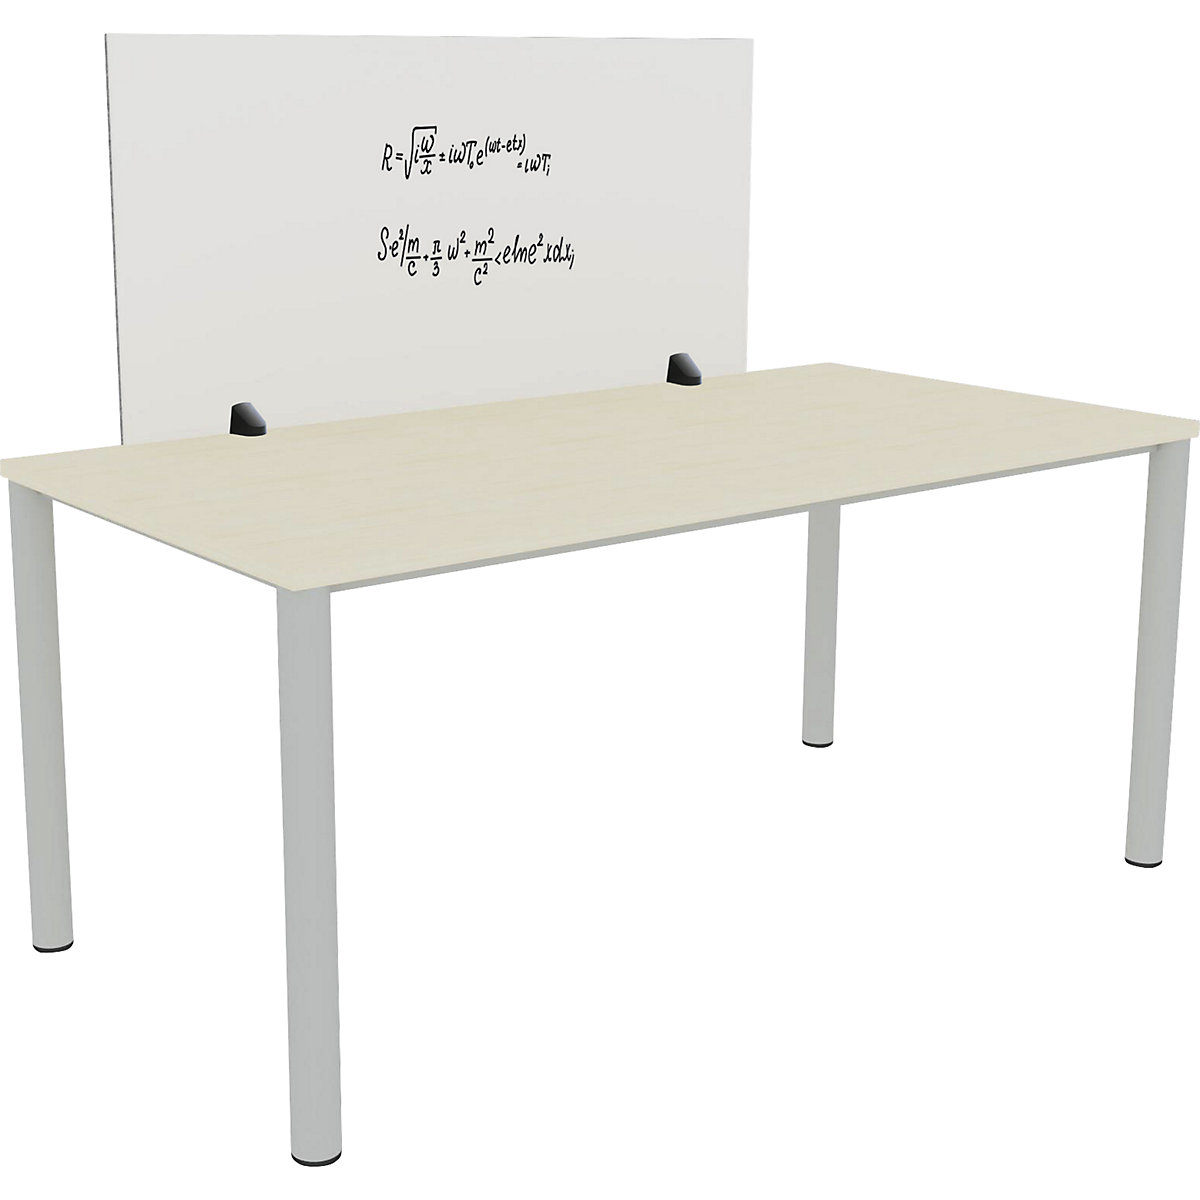 Tischtrennwand für Einzelarbeitsplatz, Emaille- und PET-Filz-Oberfläche, weiß / grau, Breite 1200 mm-10